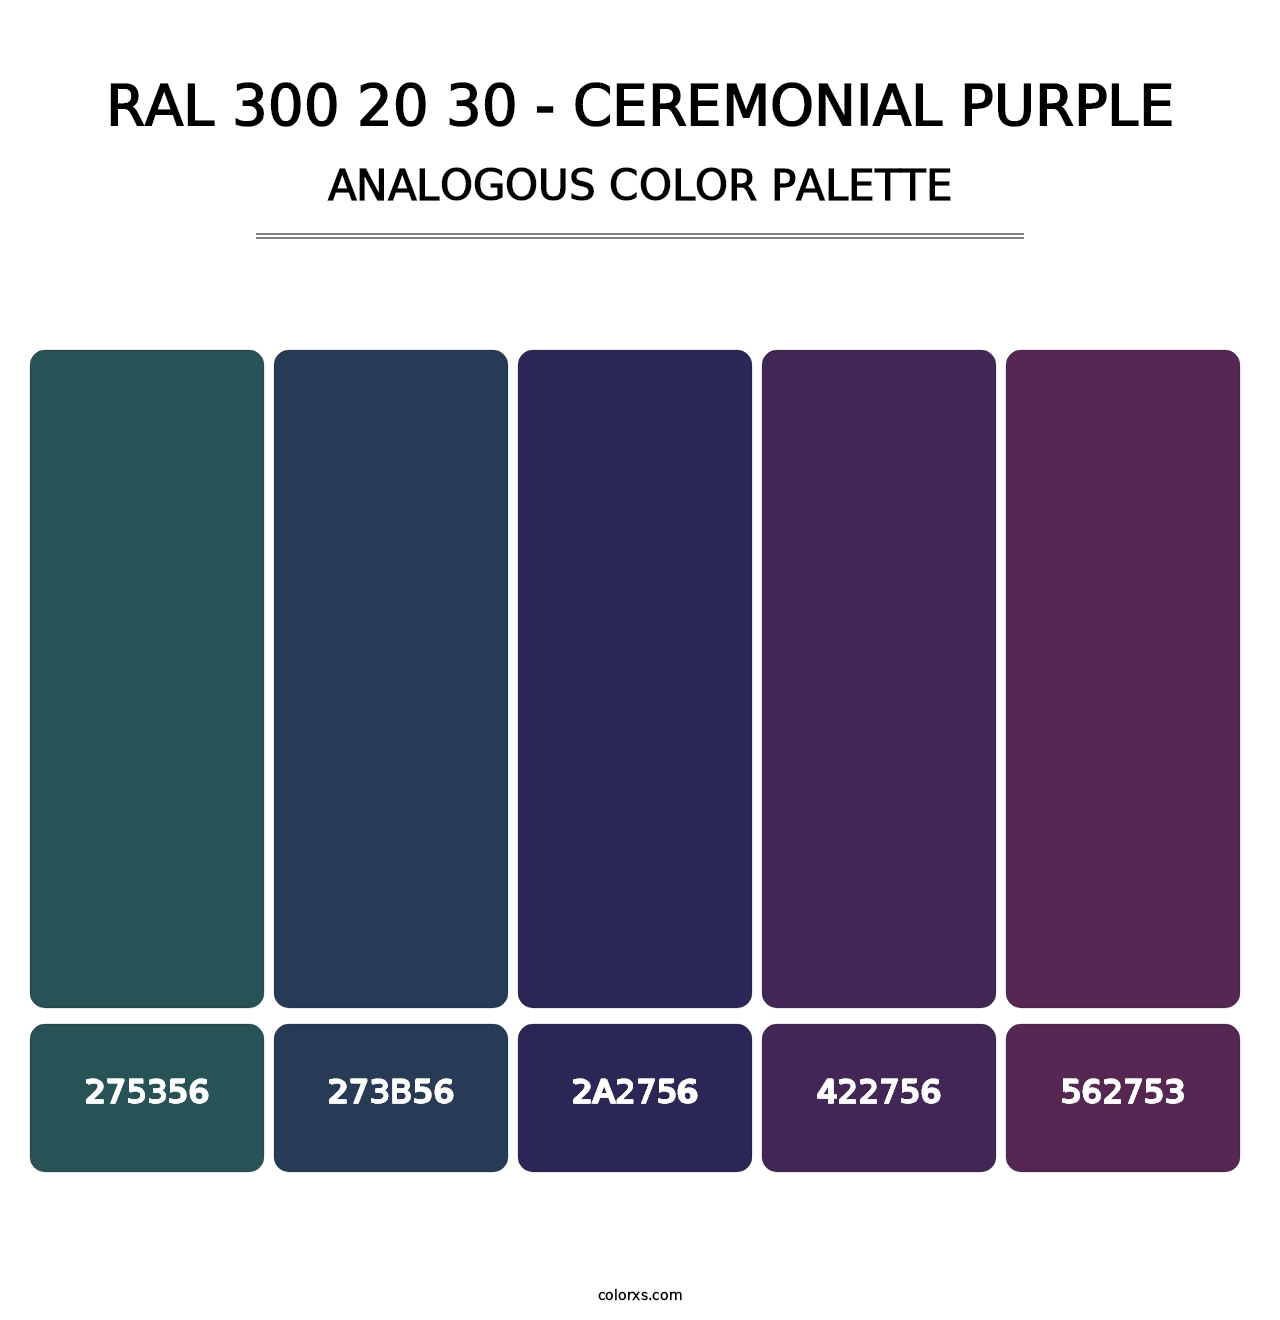 RAL 300 20 30 - Ceremonial Purple - Analogous Color Palette